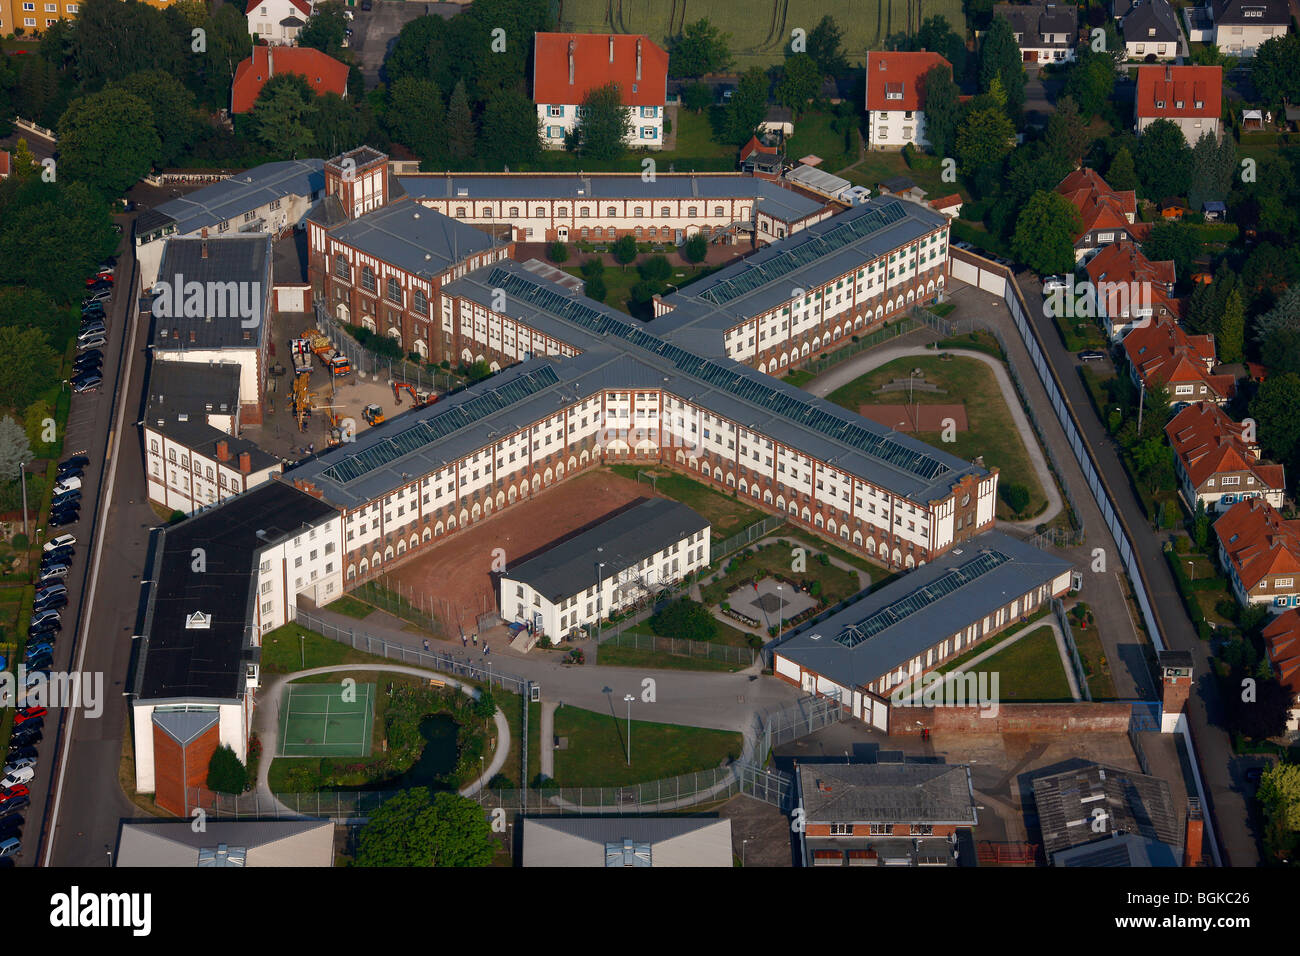 Foto aerea, prigione, detenzione, JVA Werl carcere con il nuovo tetto, Werl, Renania settentrionale-Vestfalia, Germania, Europa Foto Stock